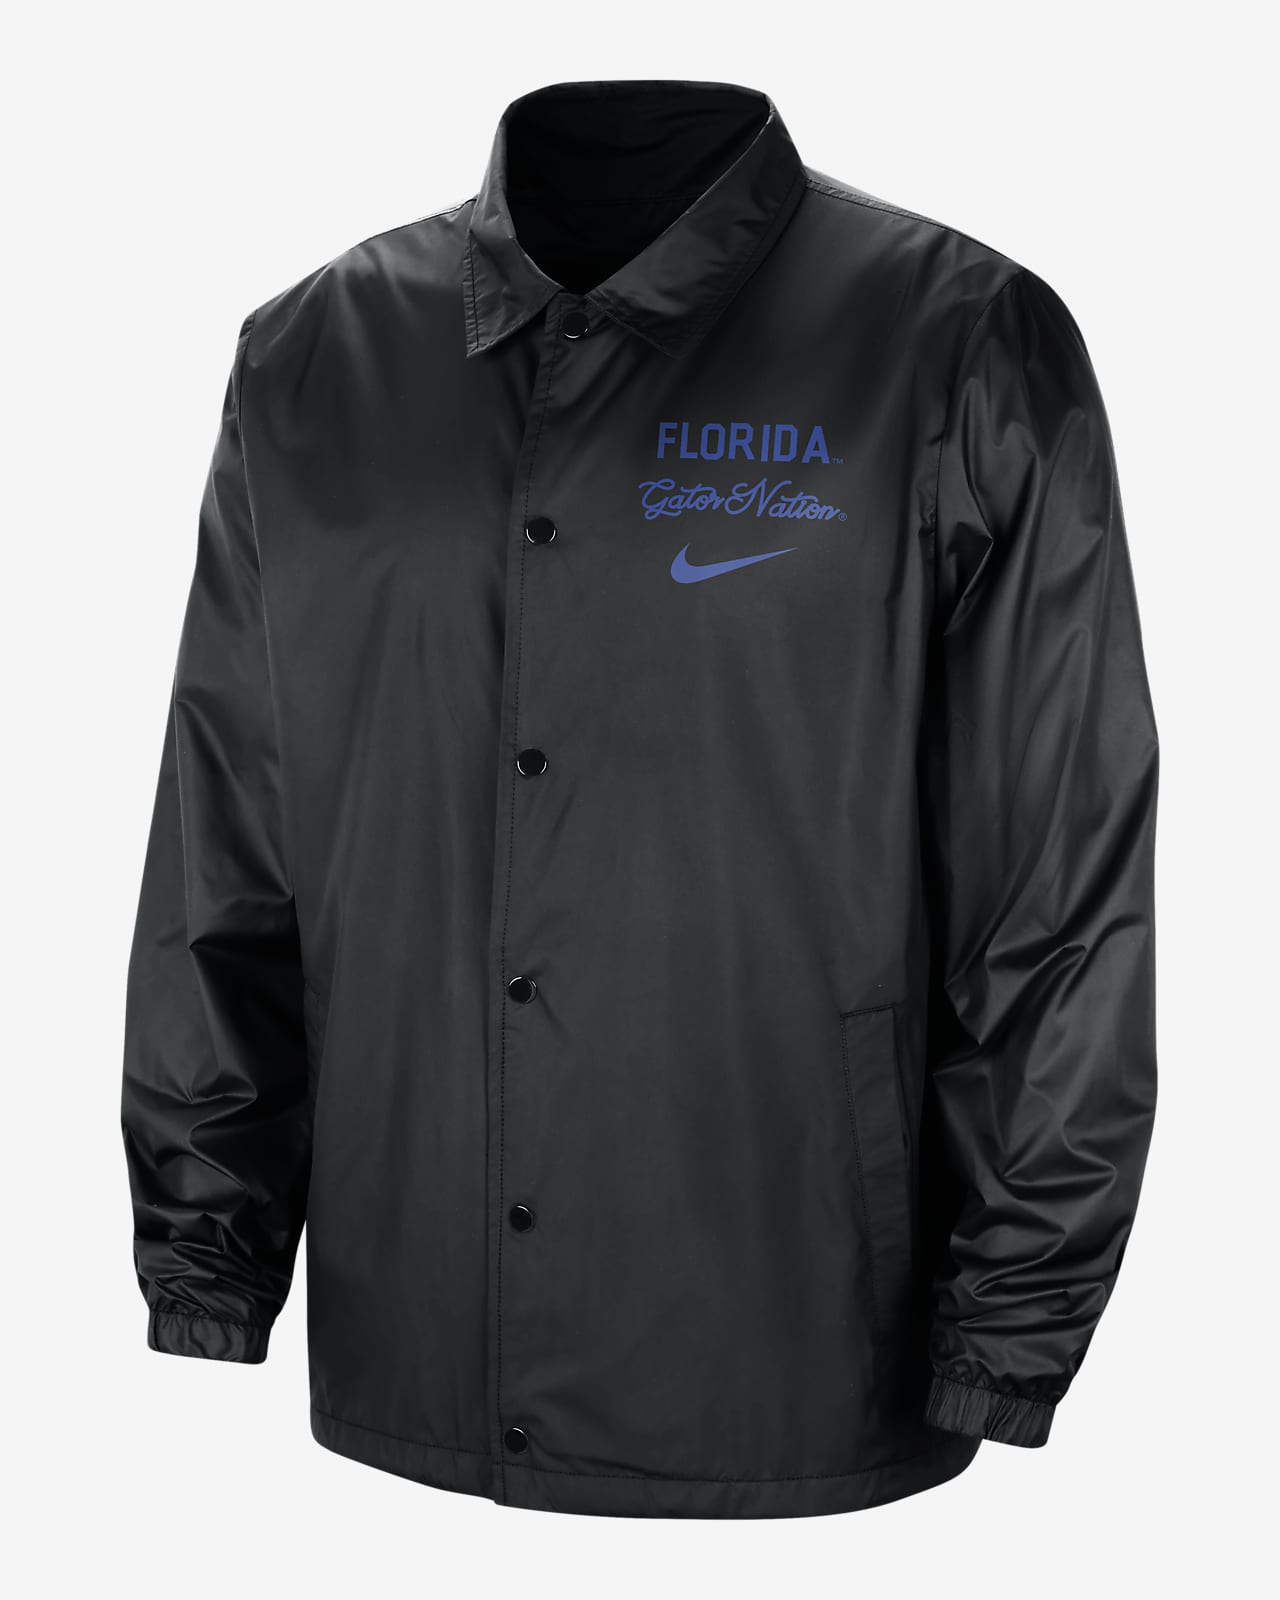 Chamarra universitaria Nike para hombre Florida